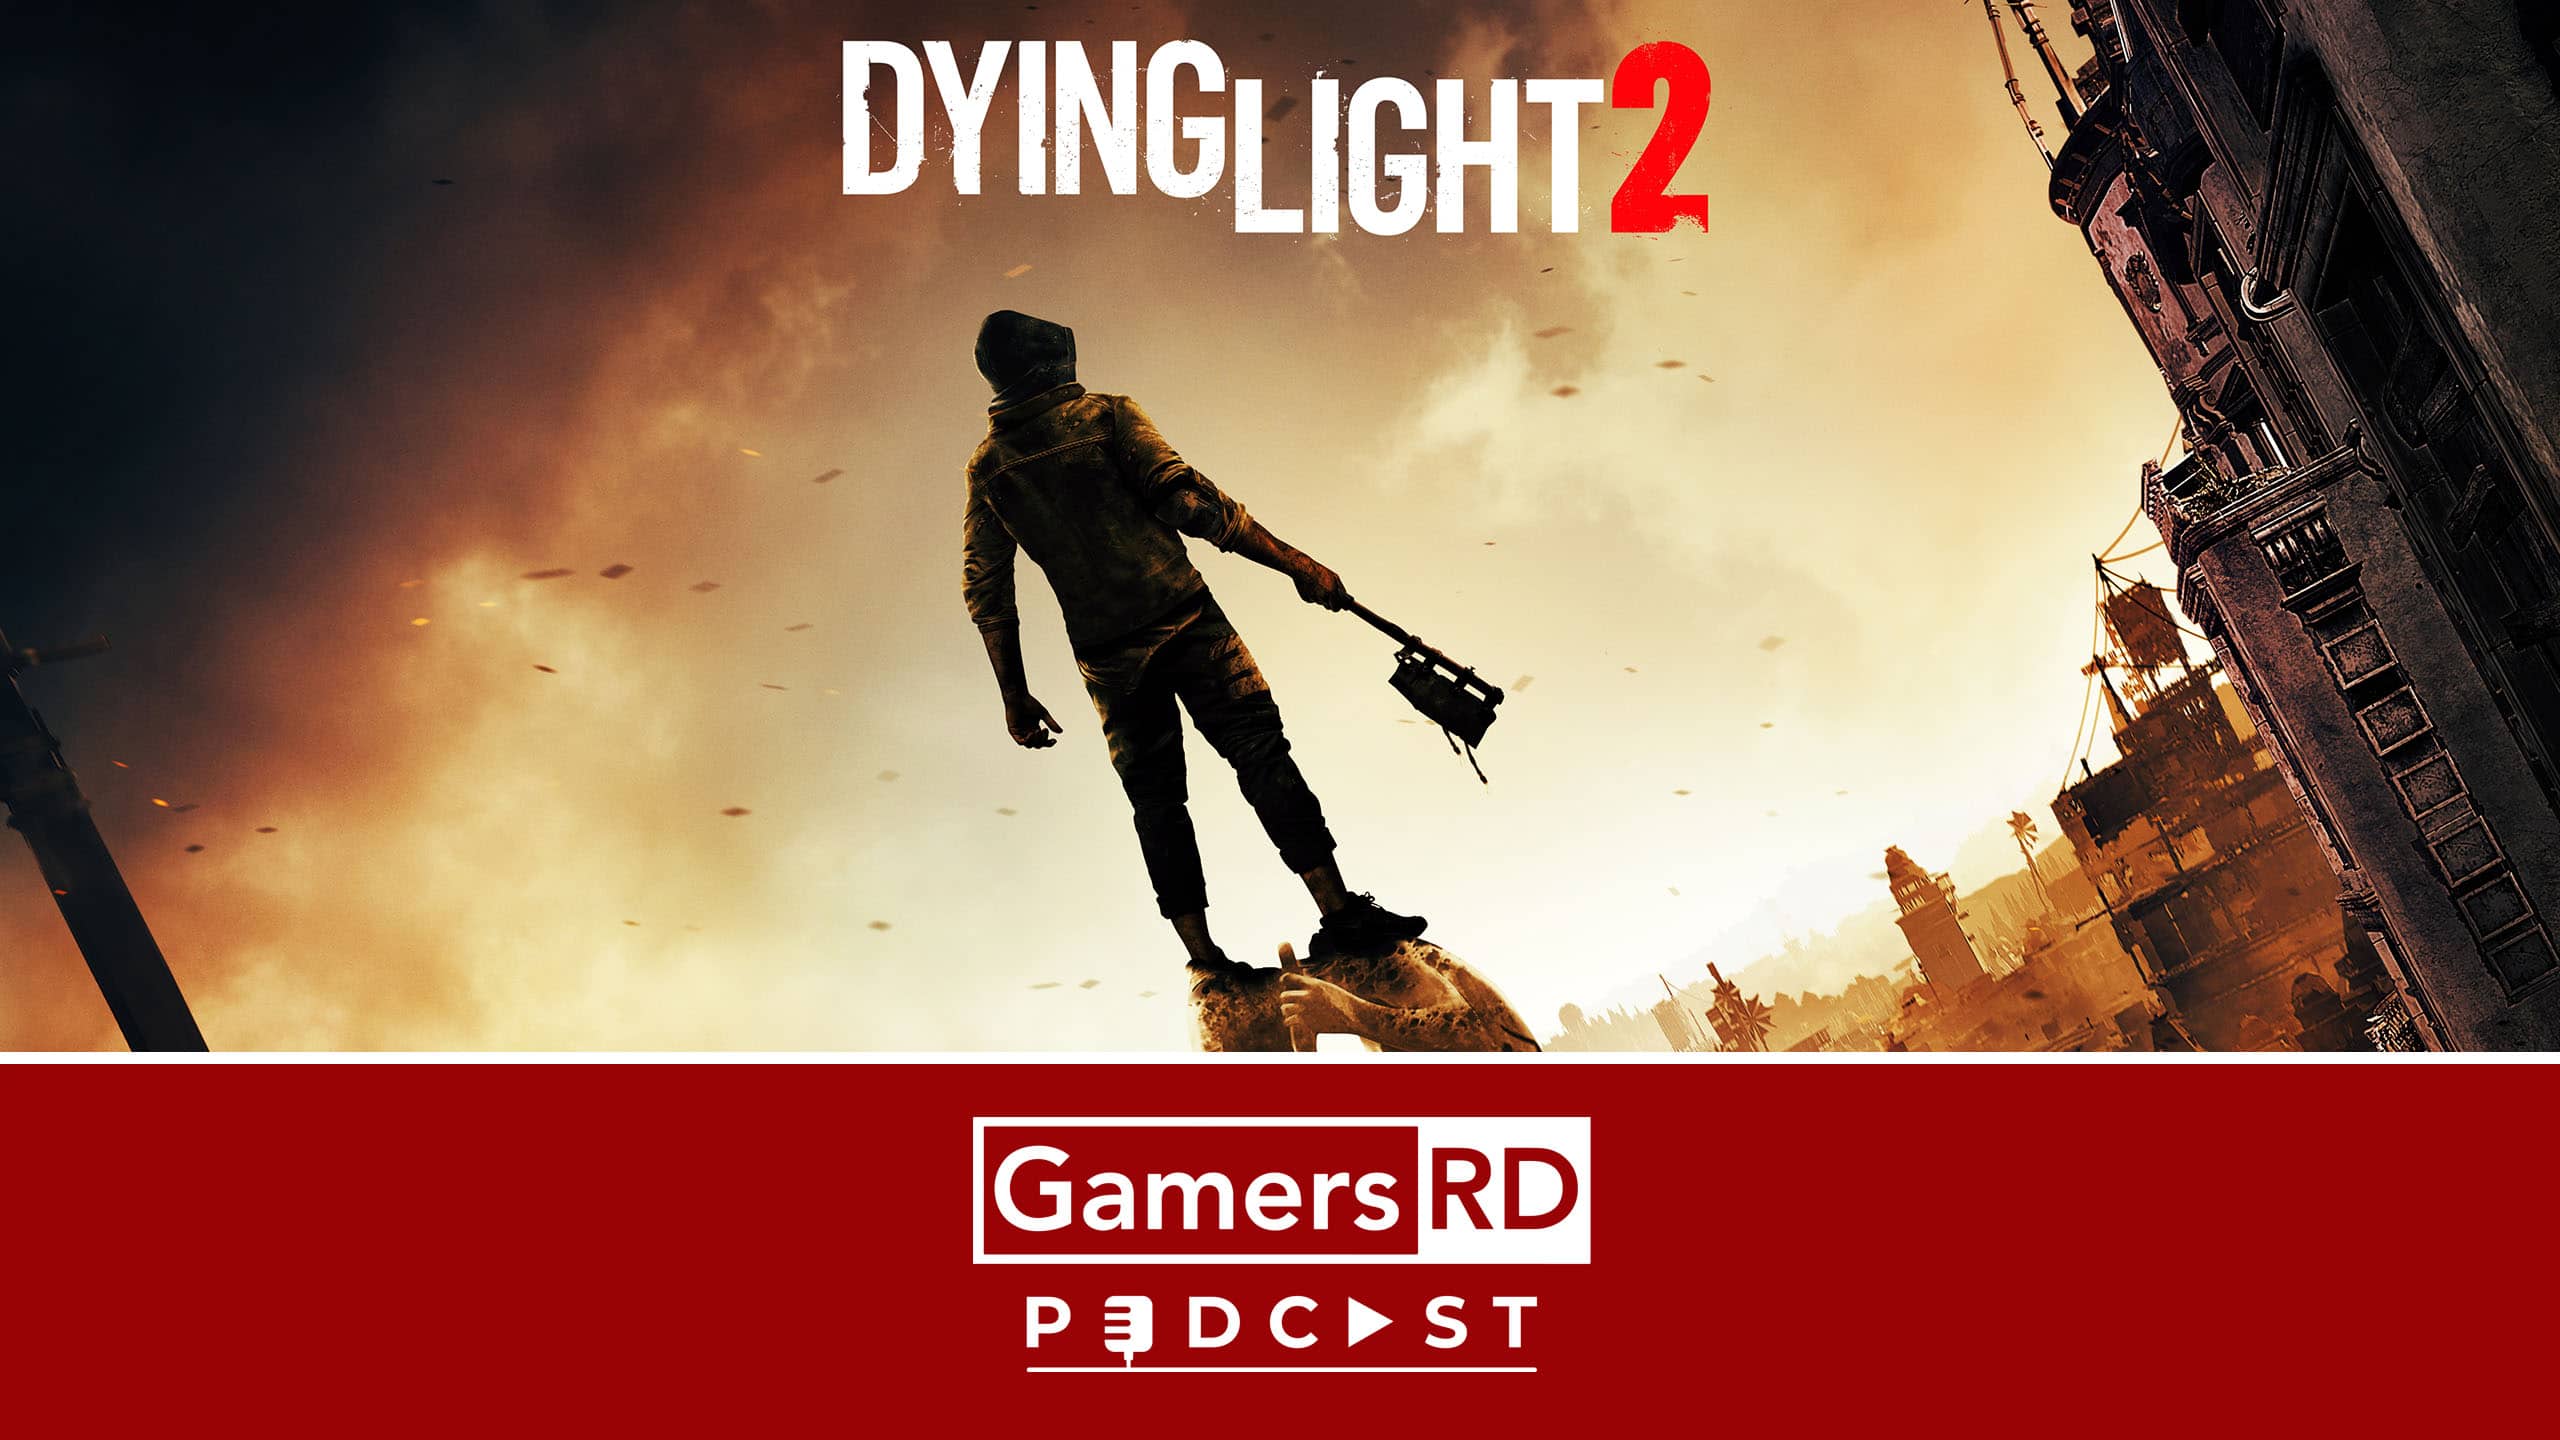 GamersRD Podcast - Dying Light 2